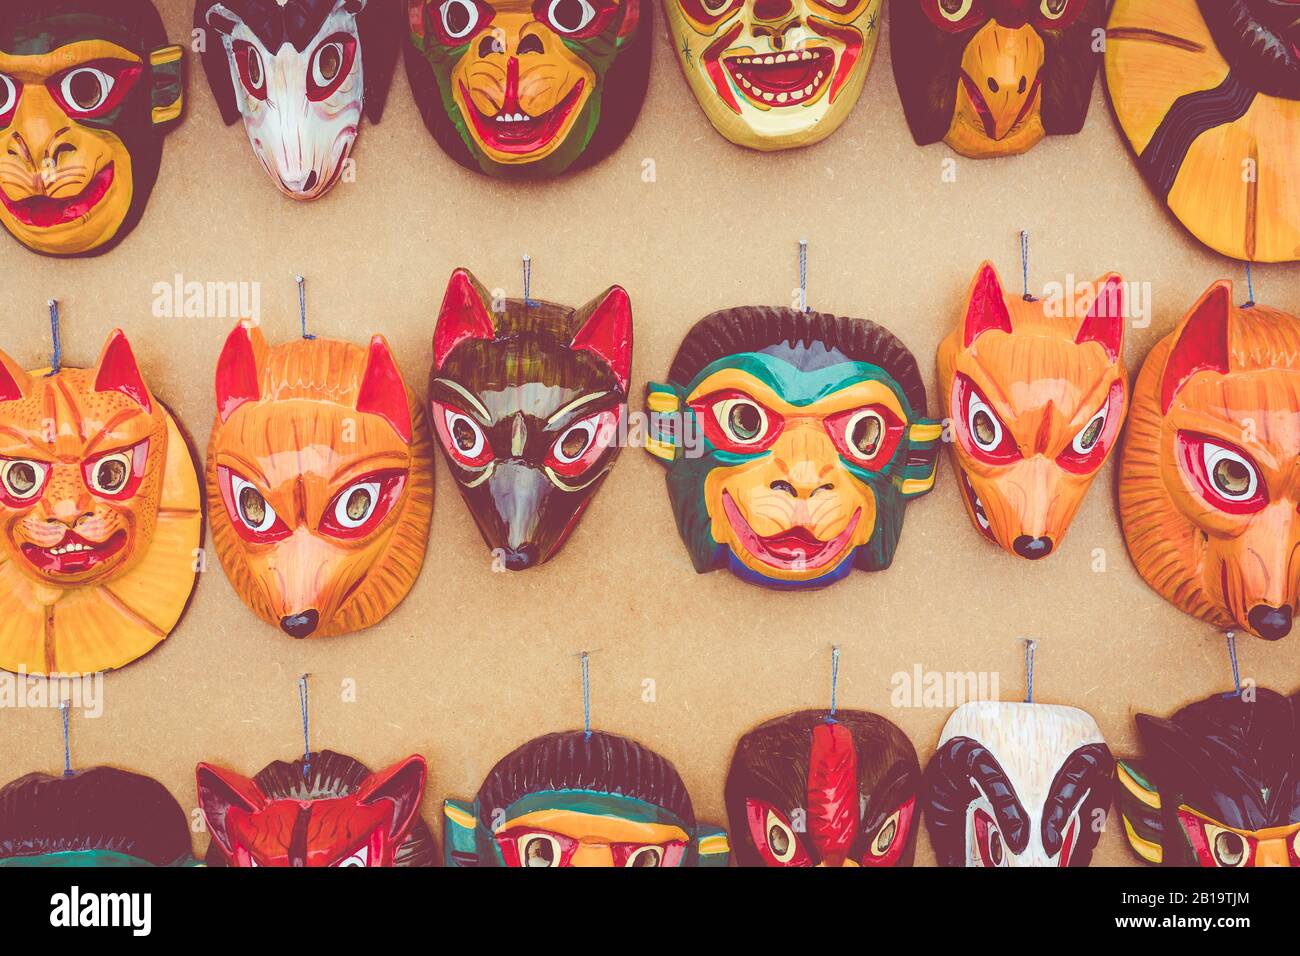 Ecuador Masks Imagenes De Stock Ecuador Masks Fotos De Stock Alamy